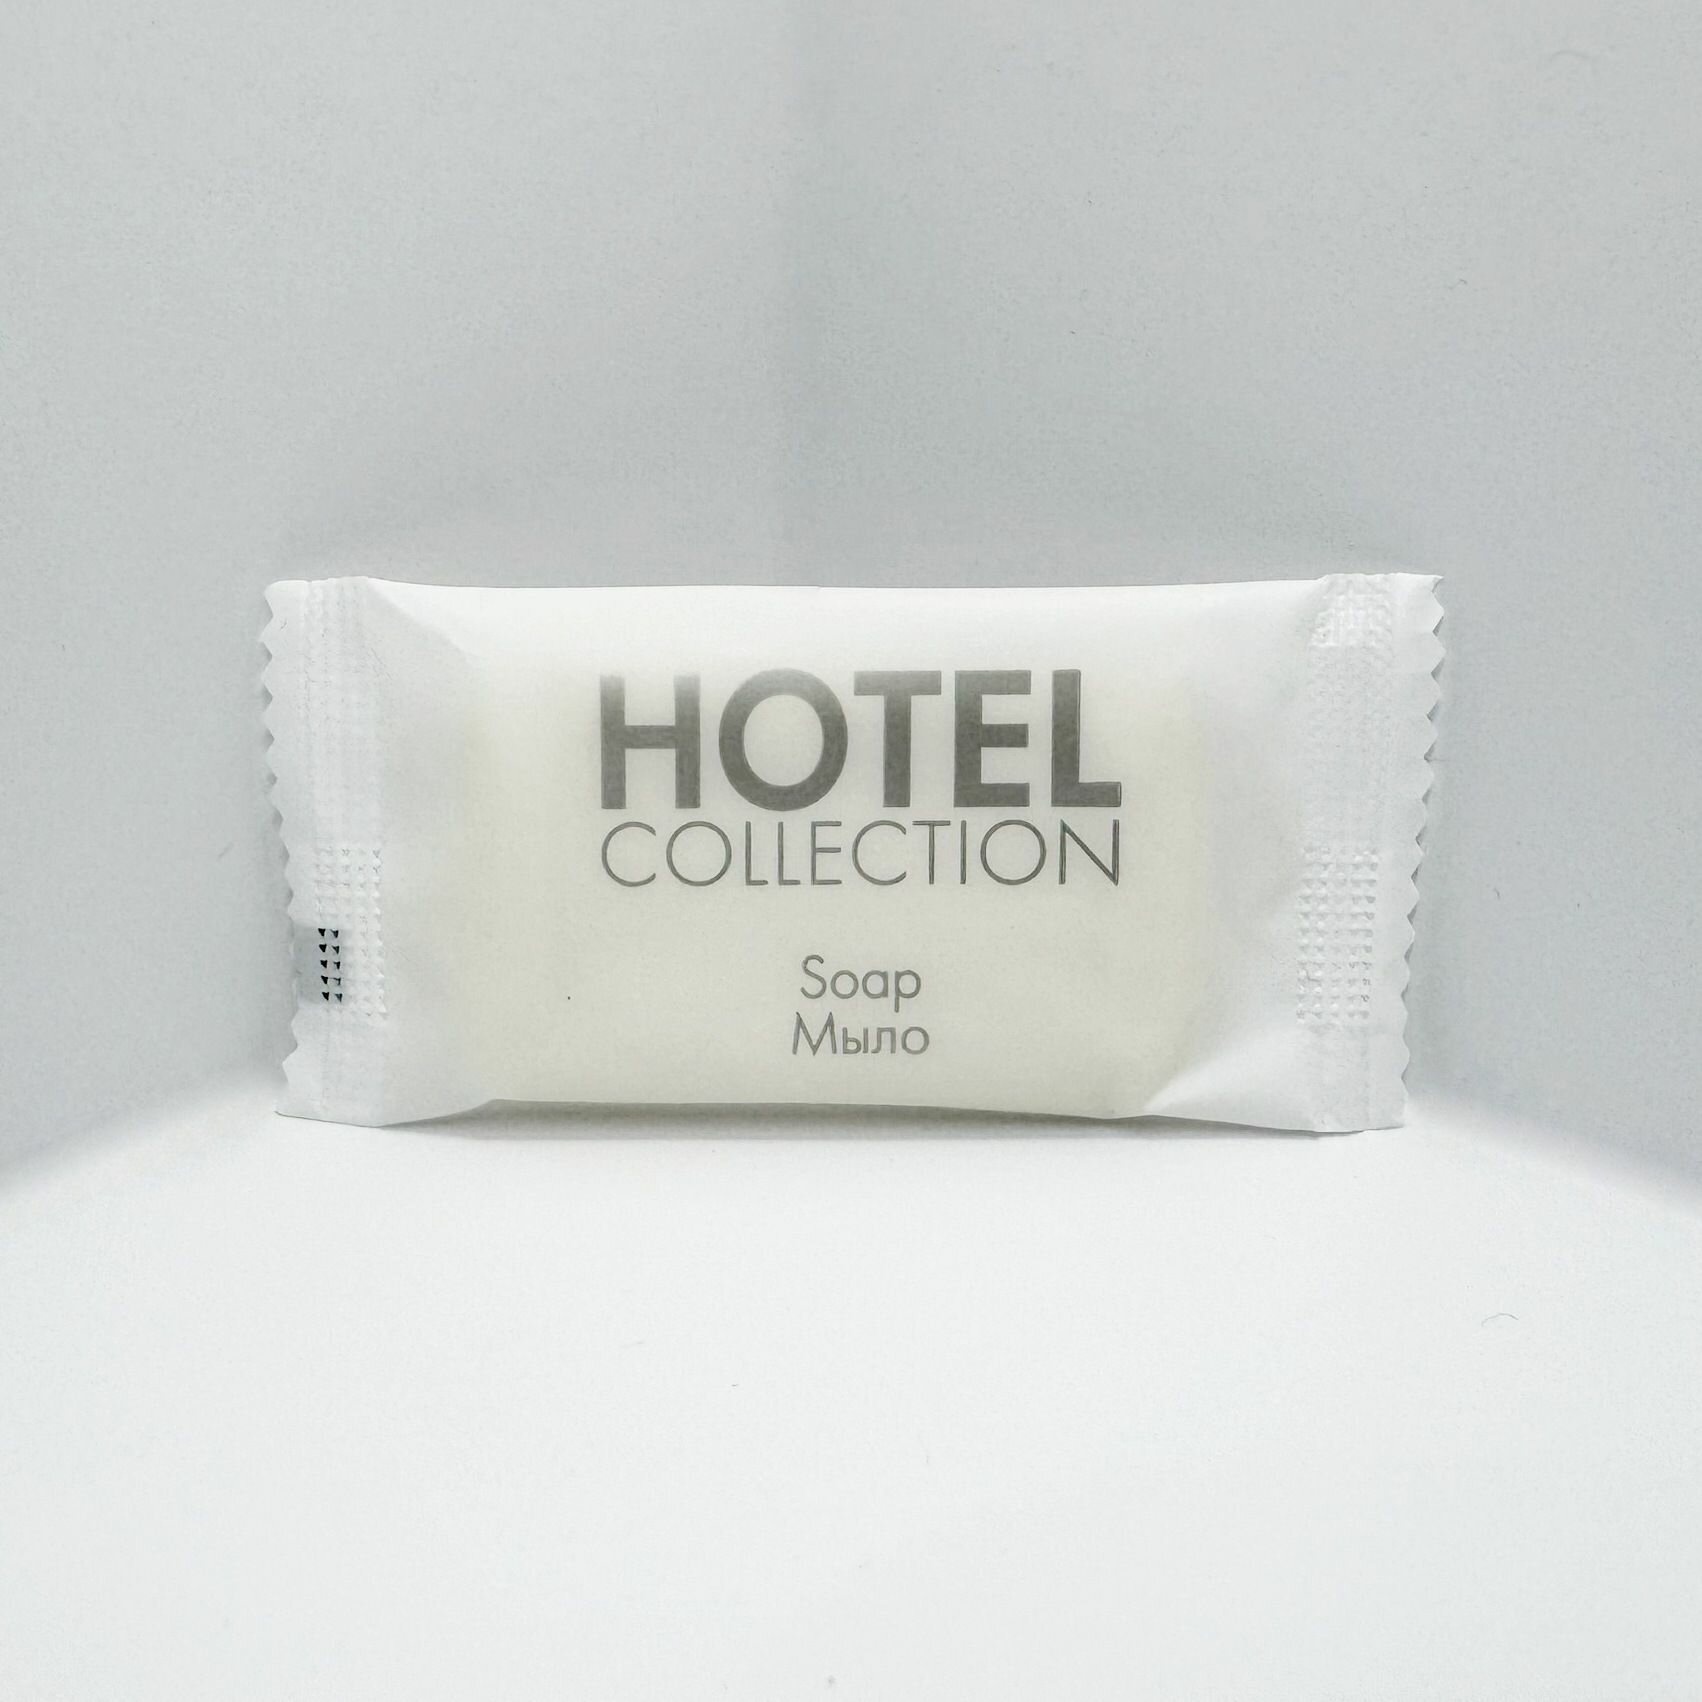 Мыло кусковое одноразовое в упаковке флоу-пак 13 гр. 100 шт. HOTEL COLLECTION для гостиниц и отелей